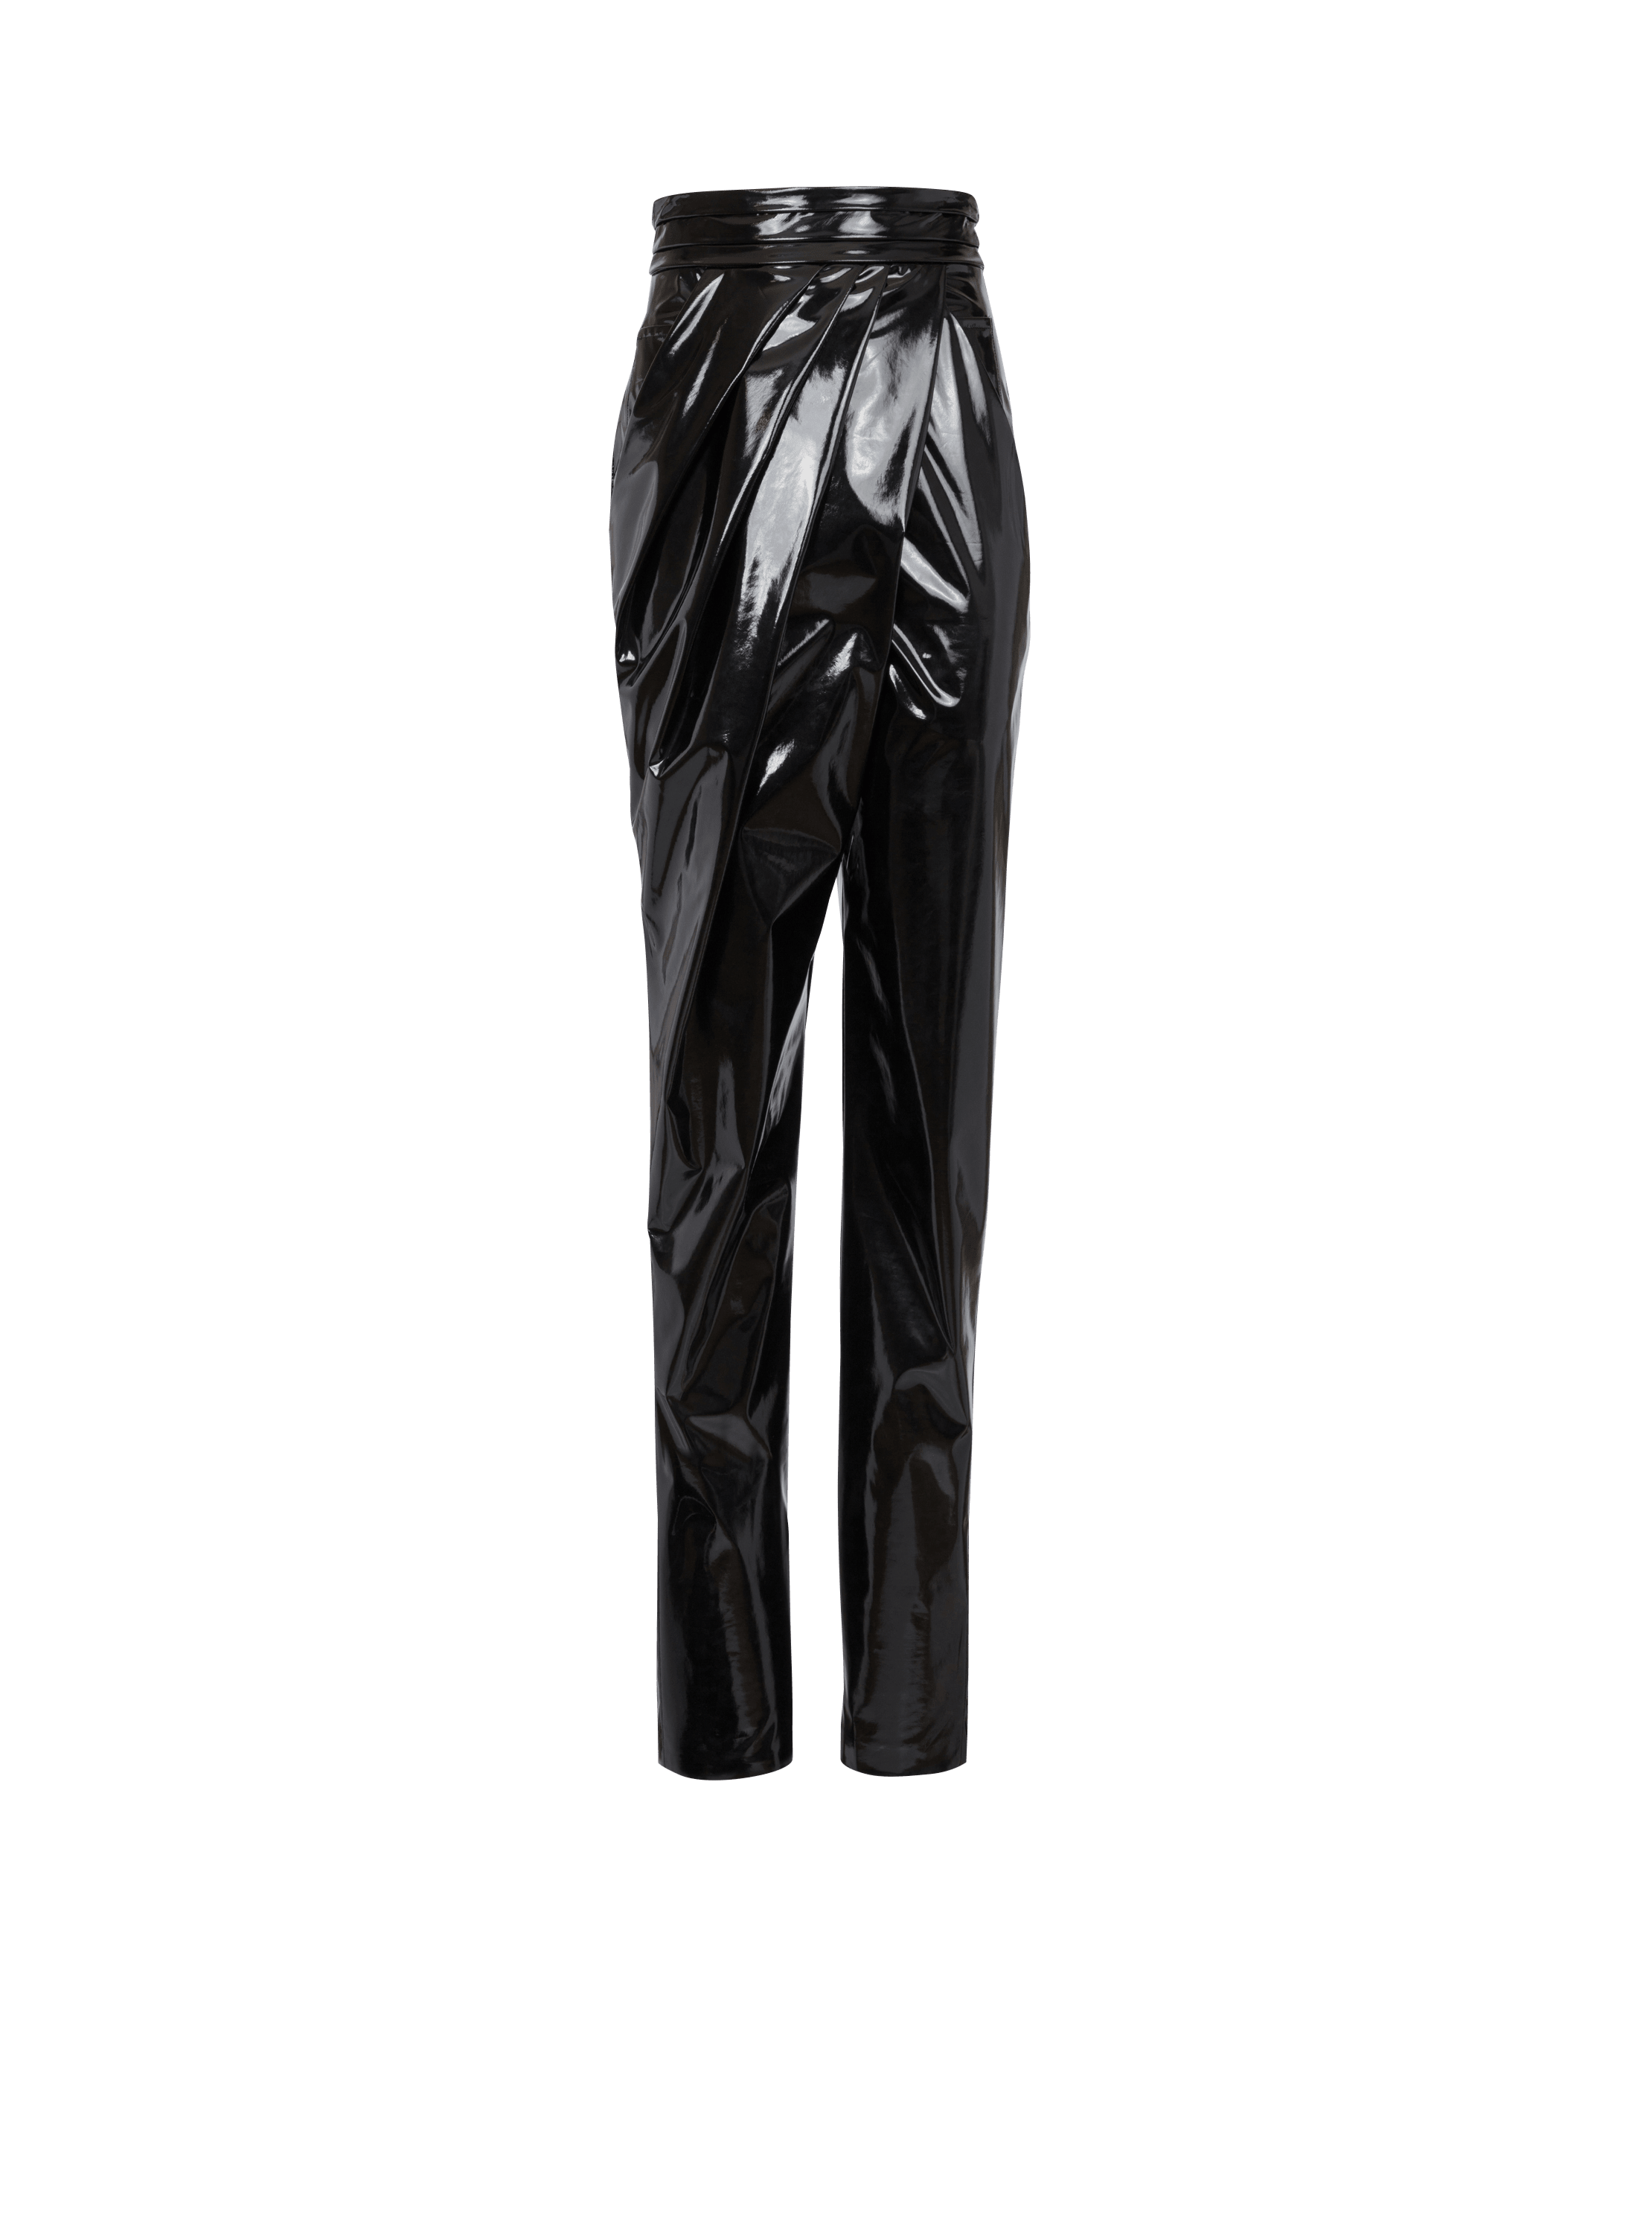 Asymmetric draped vinyl trousers, black, hi-res